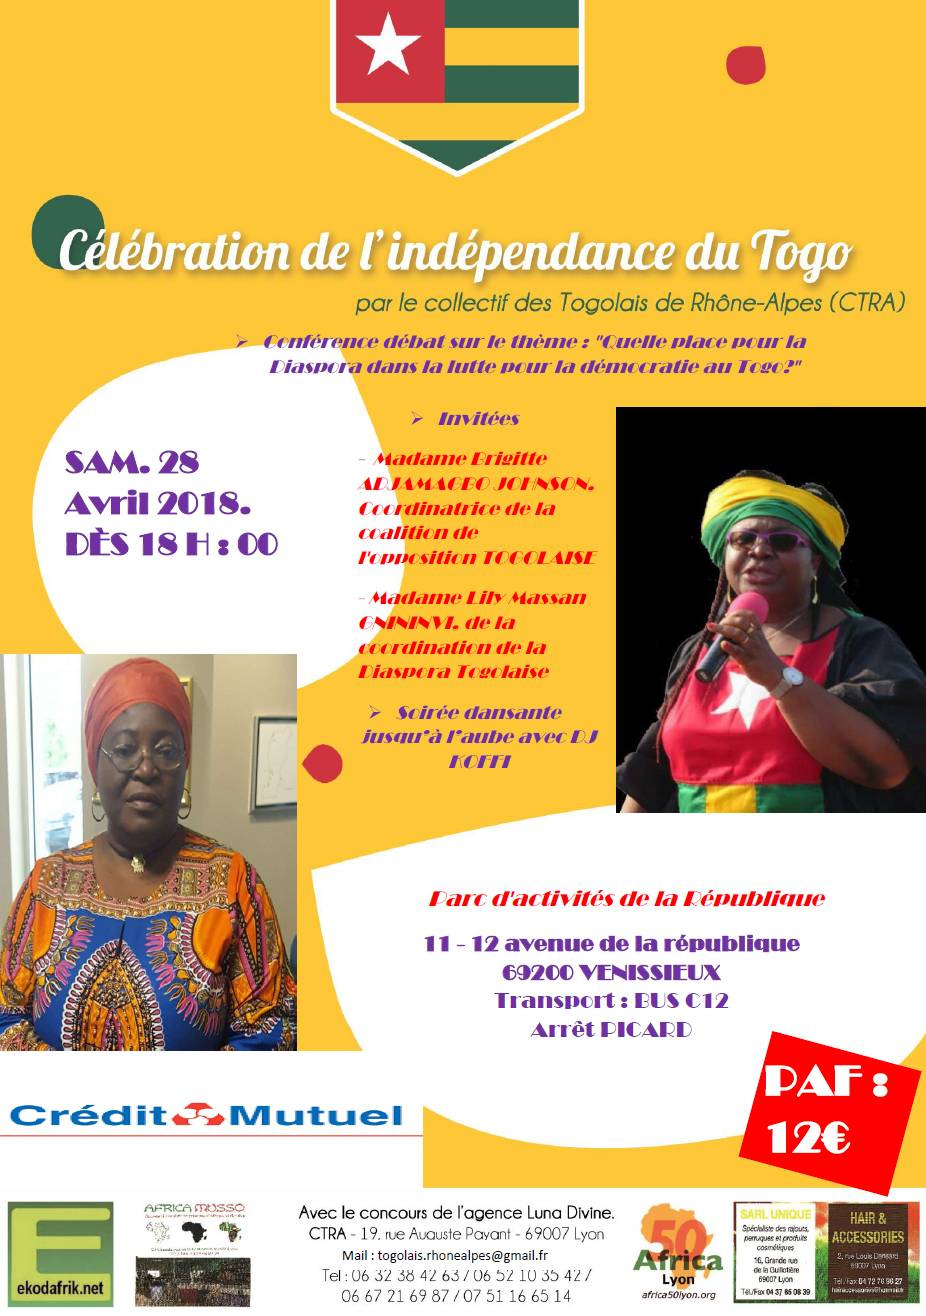 [TOGO] Célébration de la fête de l’indépendance à Lyon samedi 28 avril 2018